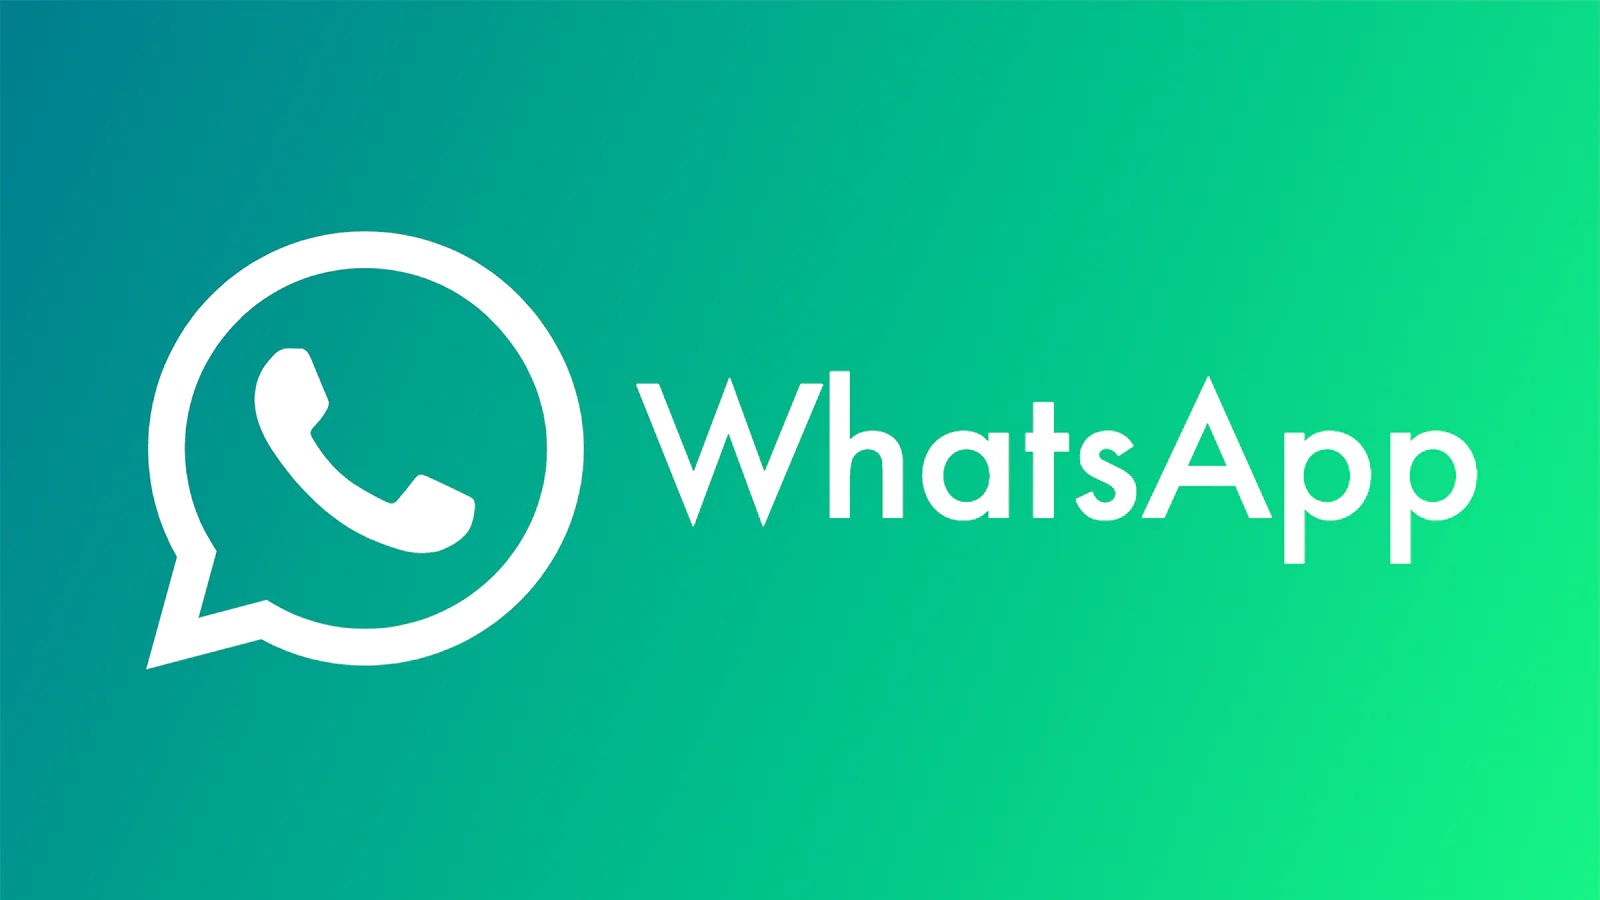 WhatsApp ha presentado oficialmente su nueva barra de navegación